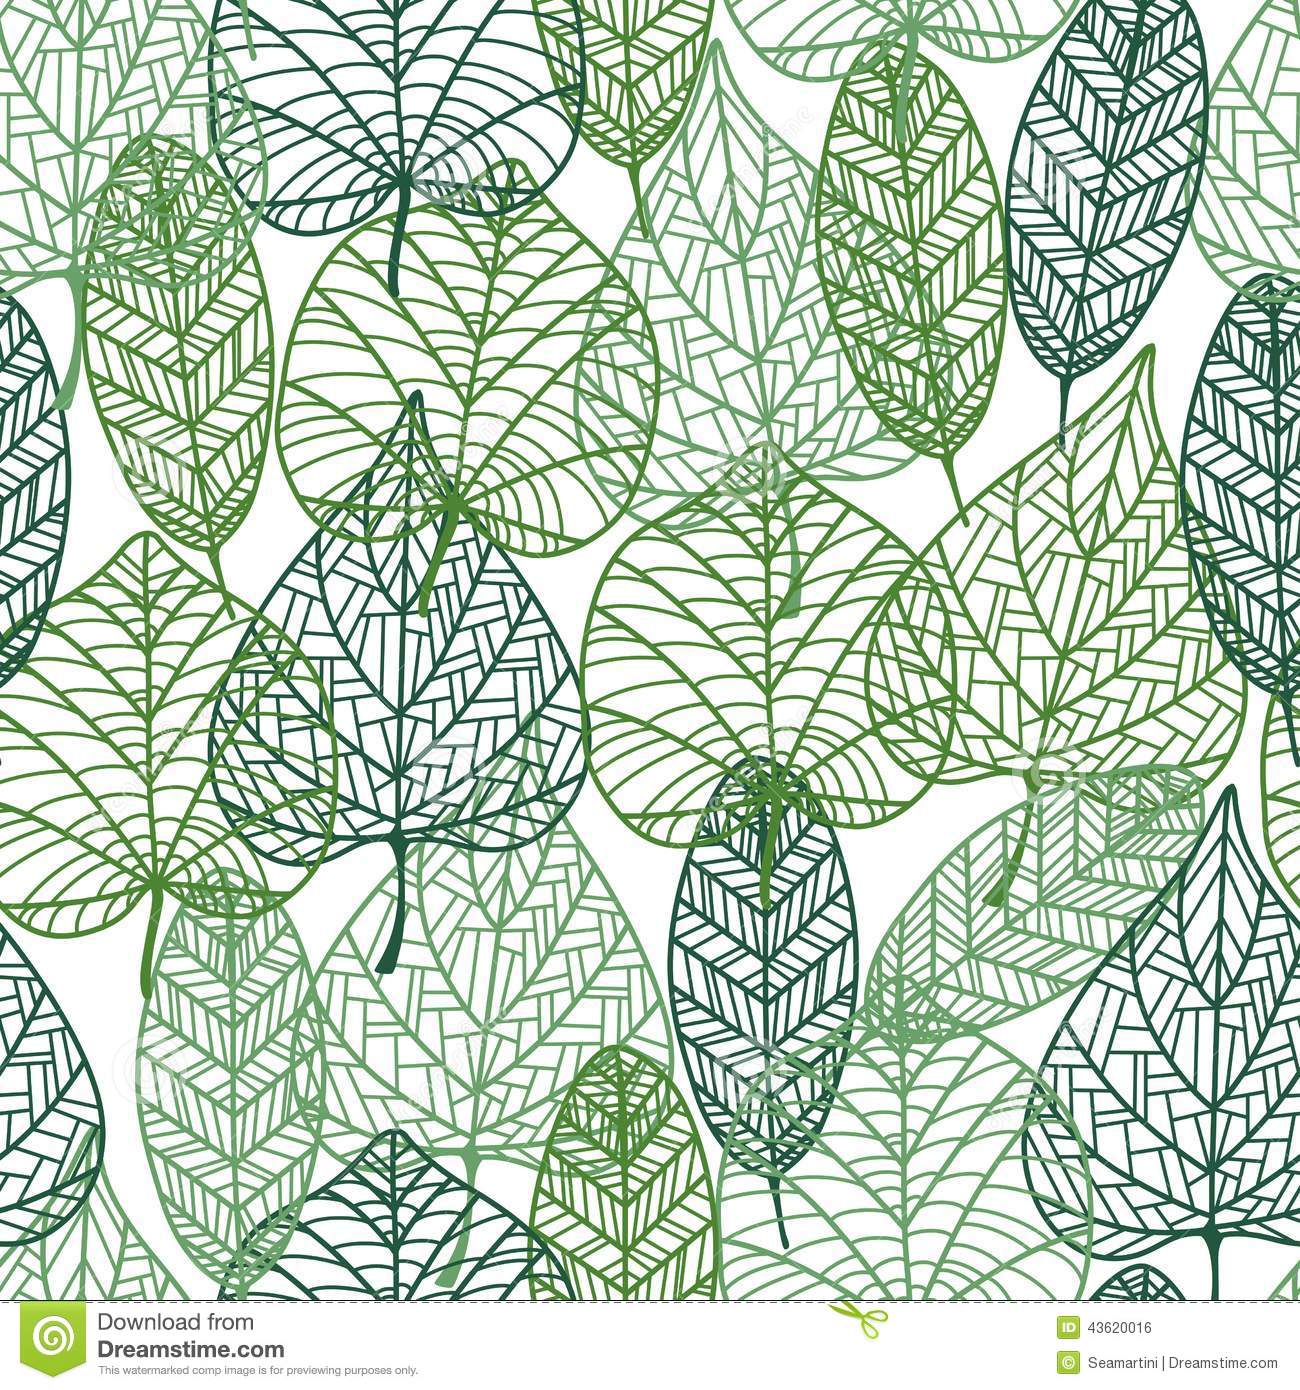 Free download Leaf Pattern Wallpaper leaf wallpaper design dromfgetop